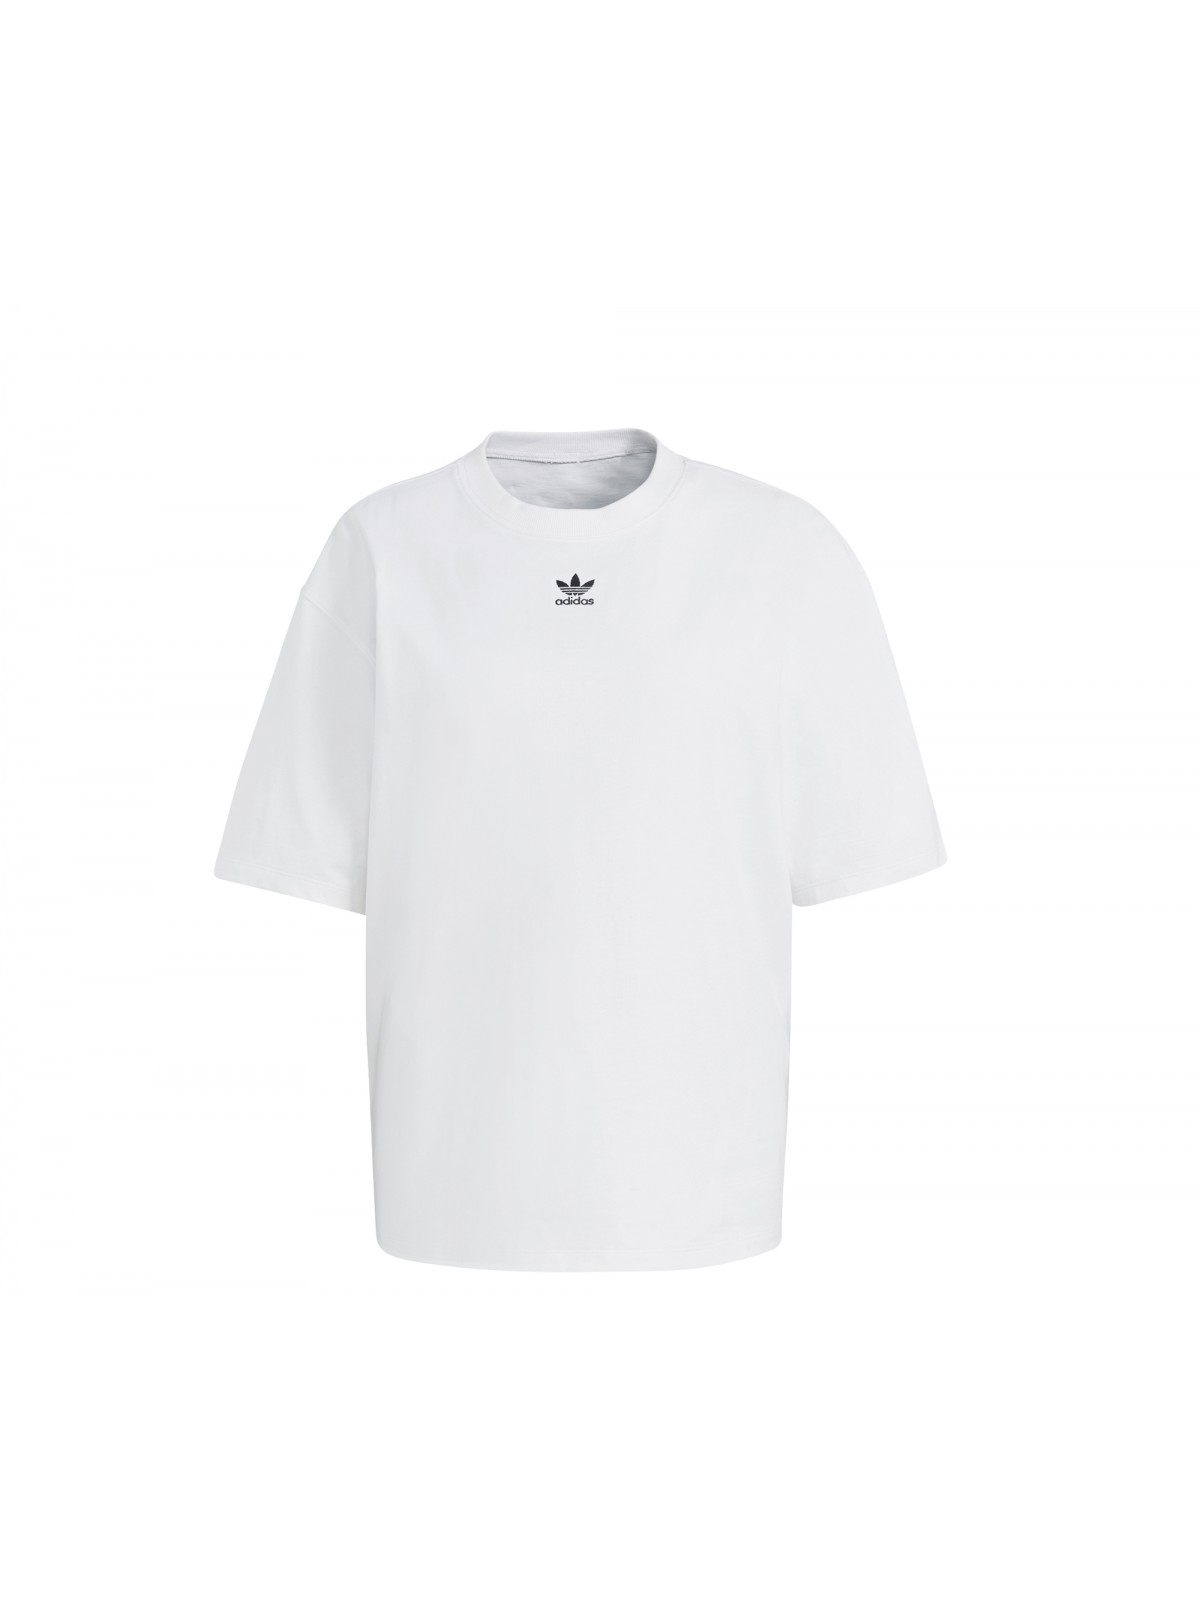 ADIDAS H45578 Tee-Shirt Oversize blanc